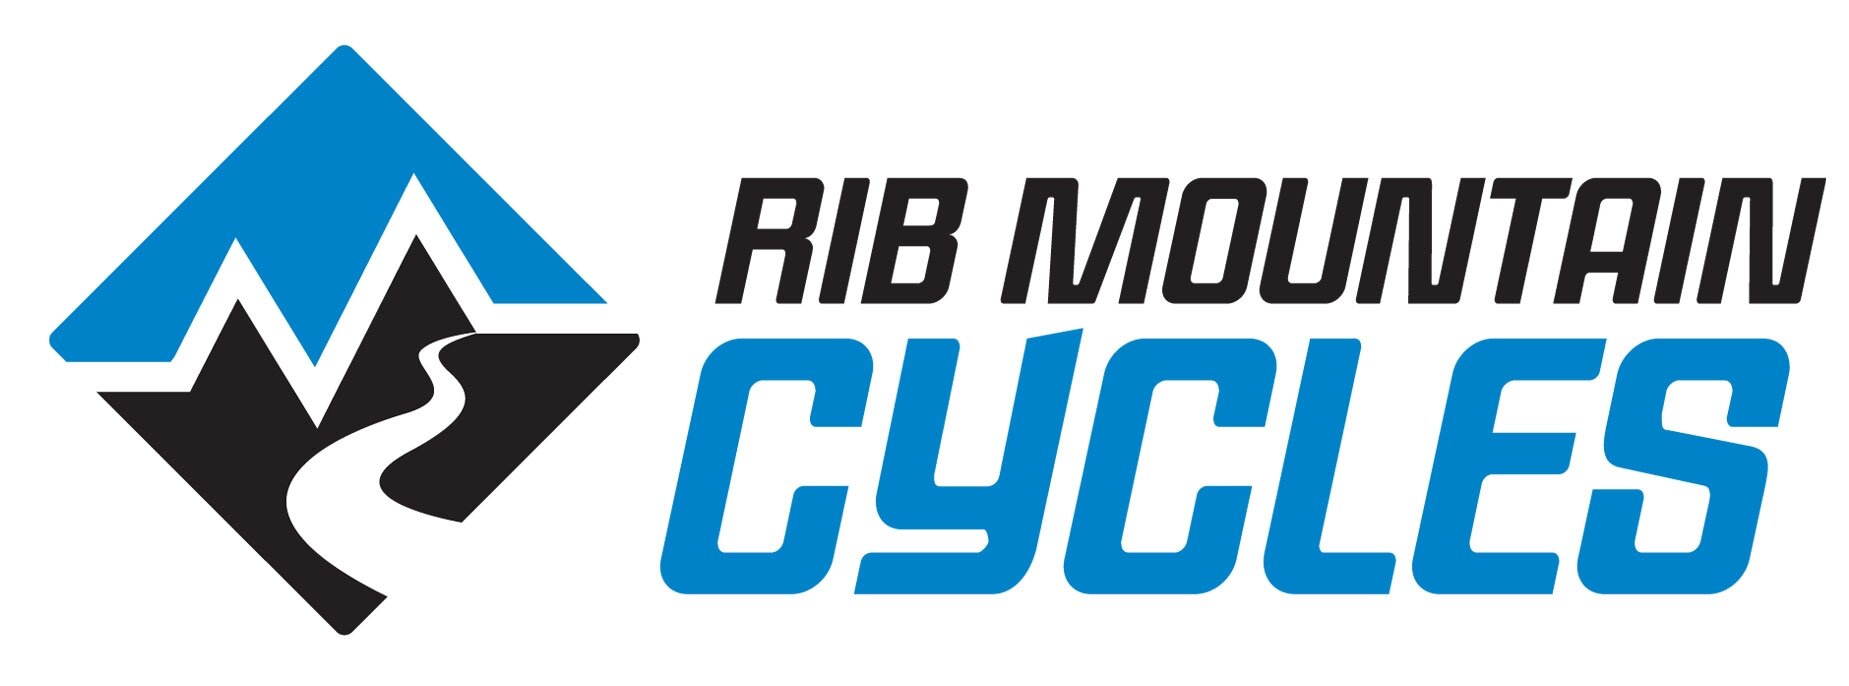 rib-mt-cycles-logo.jpg